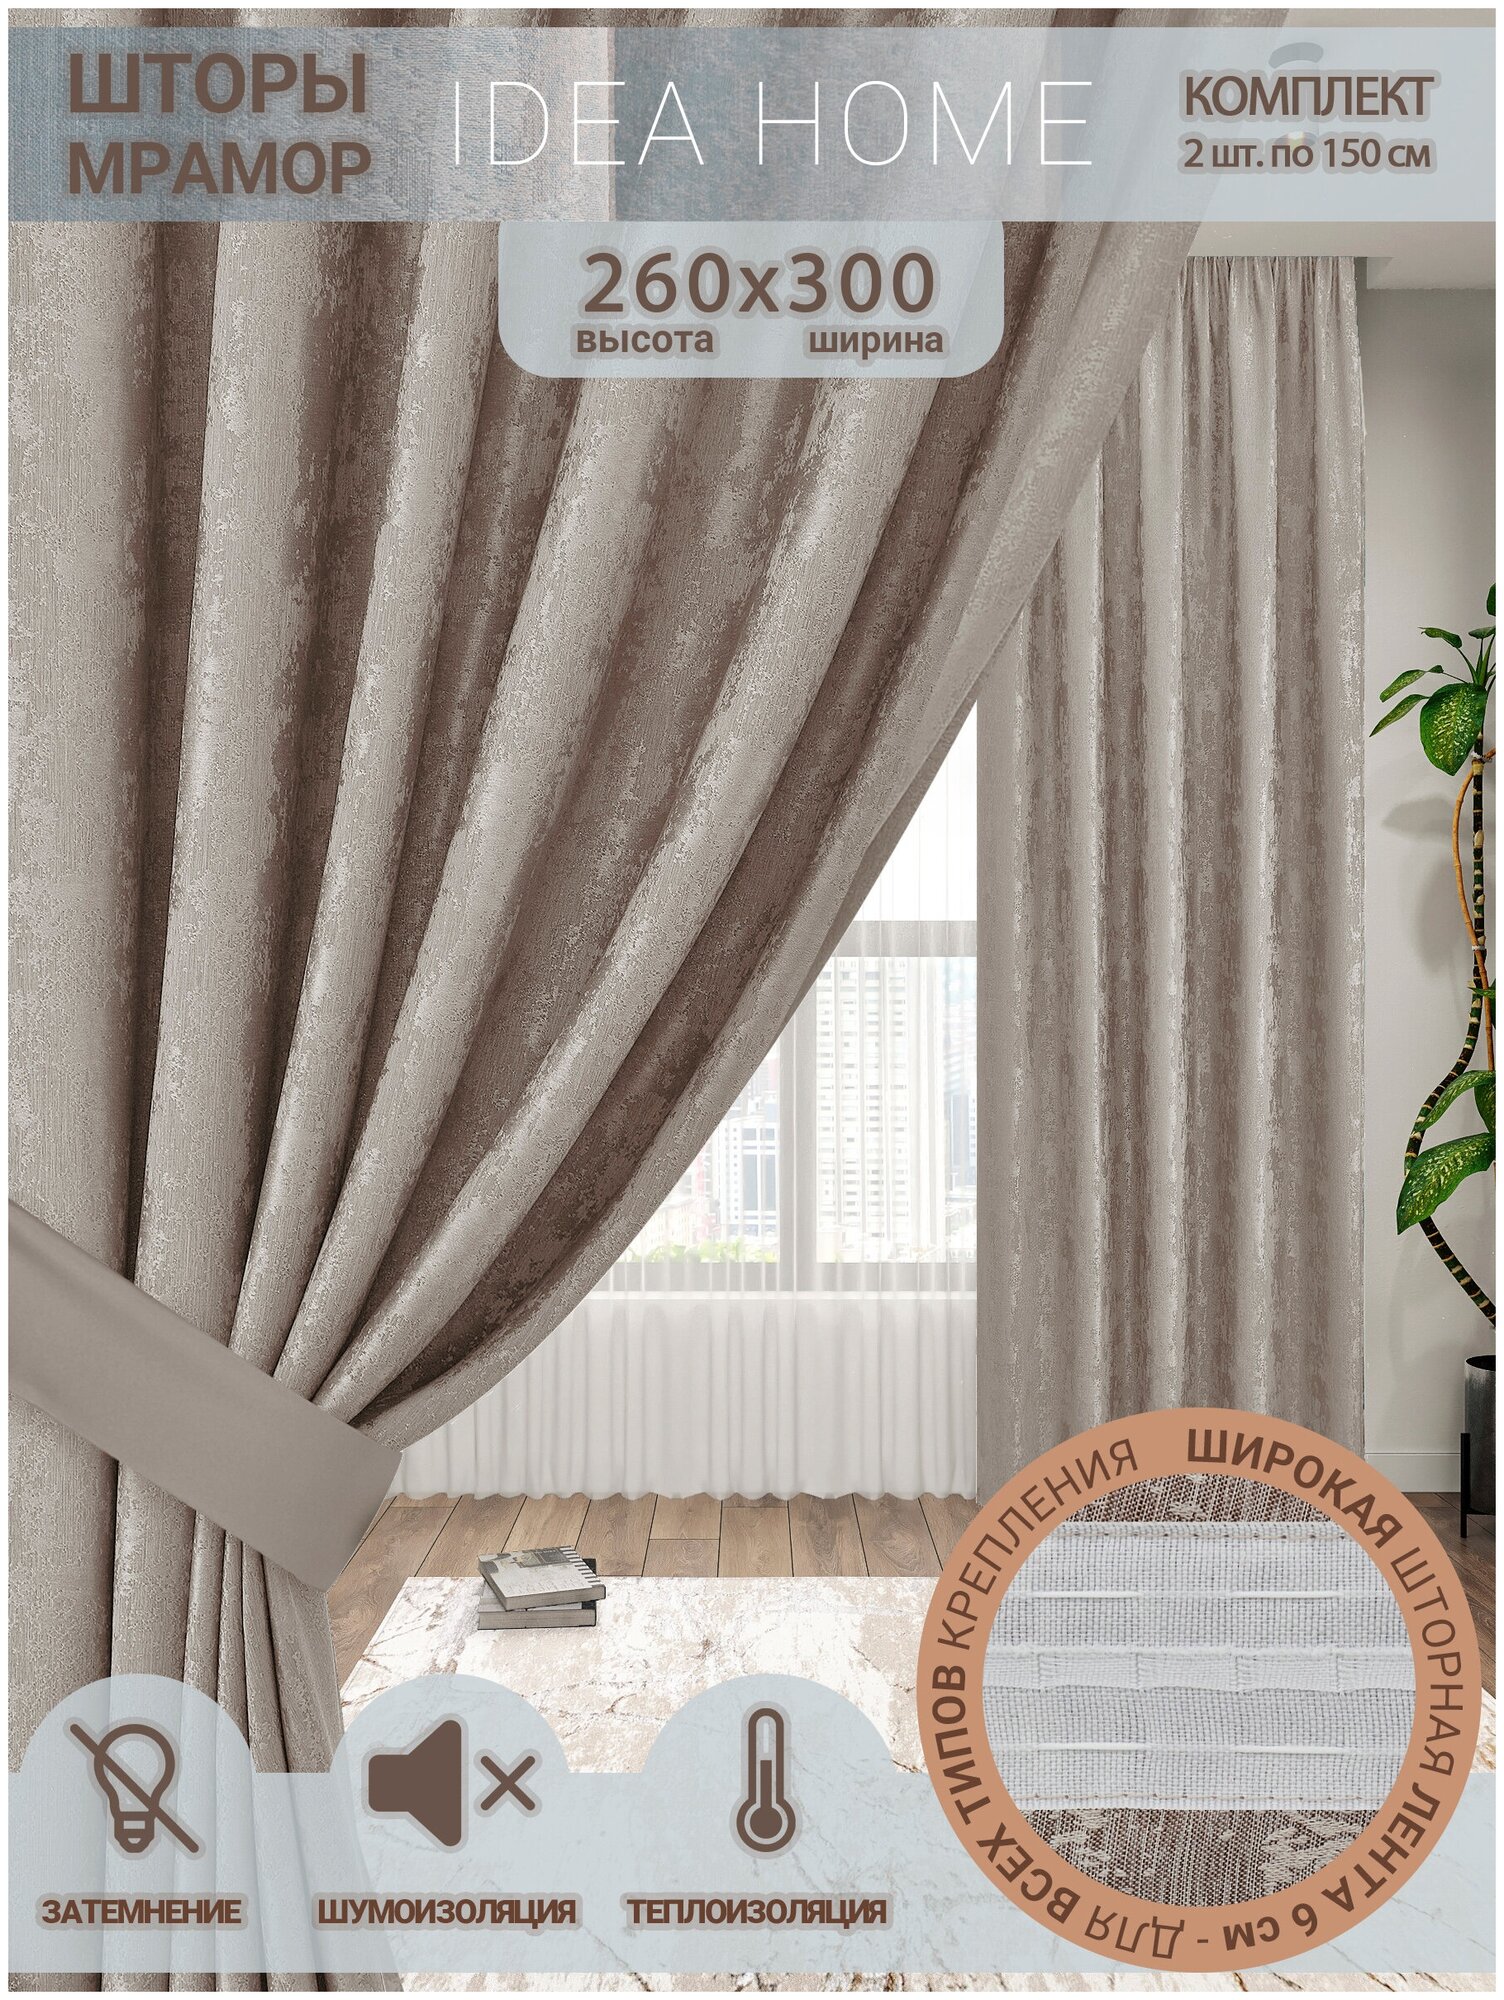 Комплект штор мрамор / IDEA HOME/ шторы для комнаты, кухни, спальни, гостиной и дачи